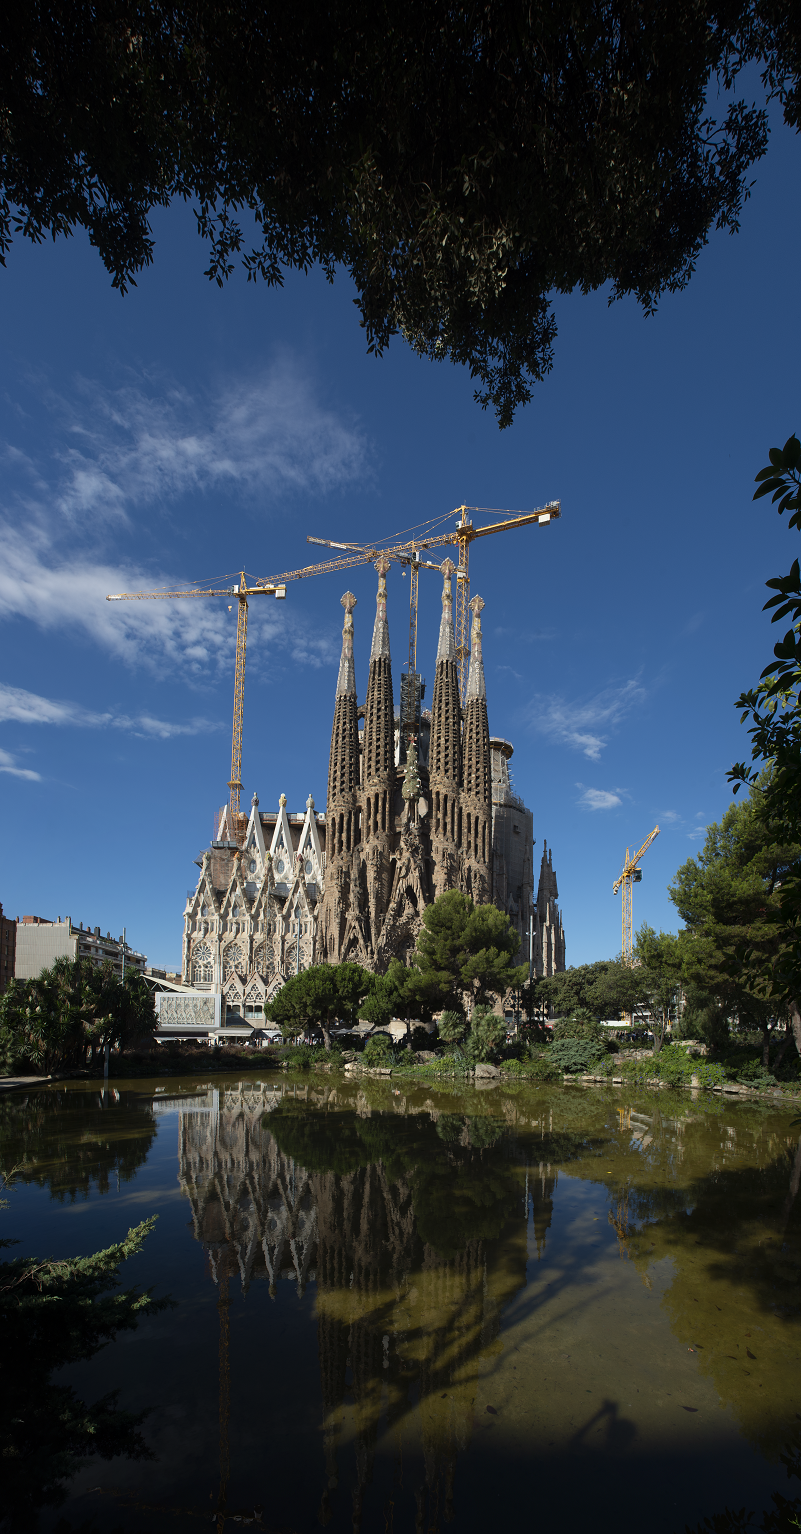  Sagrada Familia i żurawie na budowie